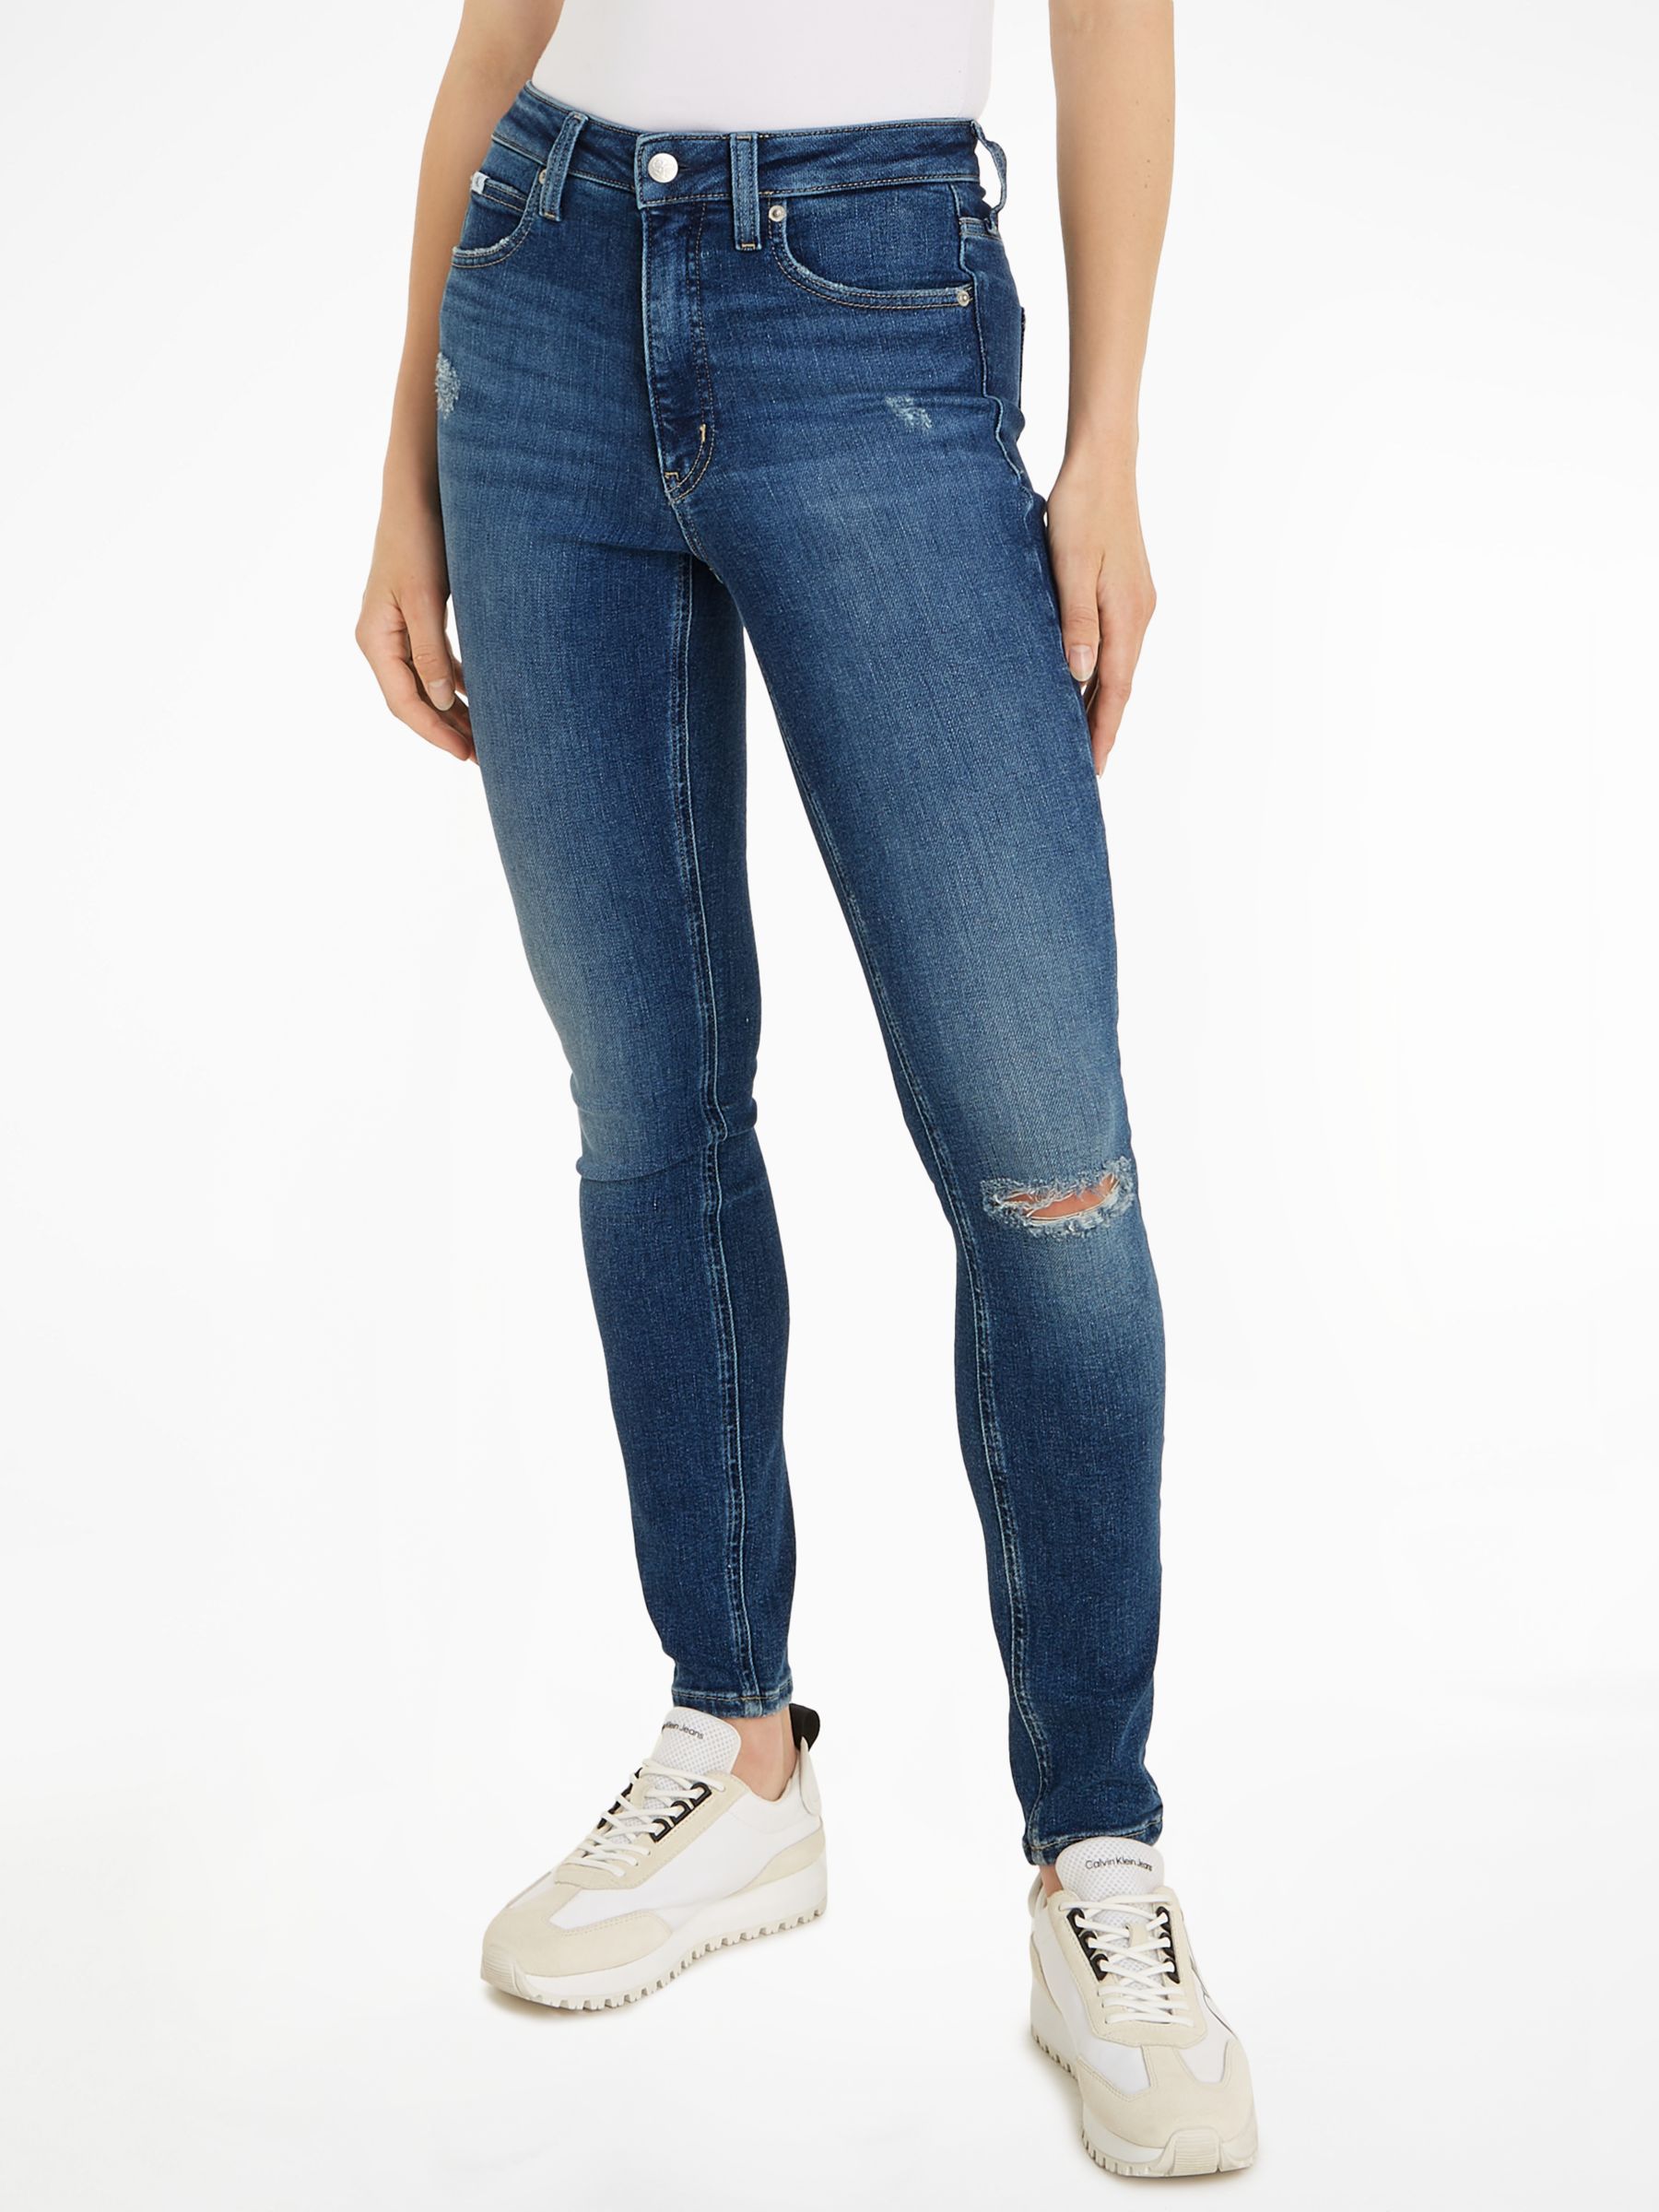 Calvin Klein Cotton Blend Skinny Jeans, Denim Dark, W25/L32